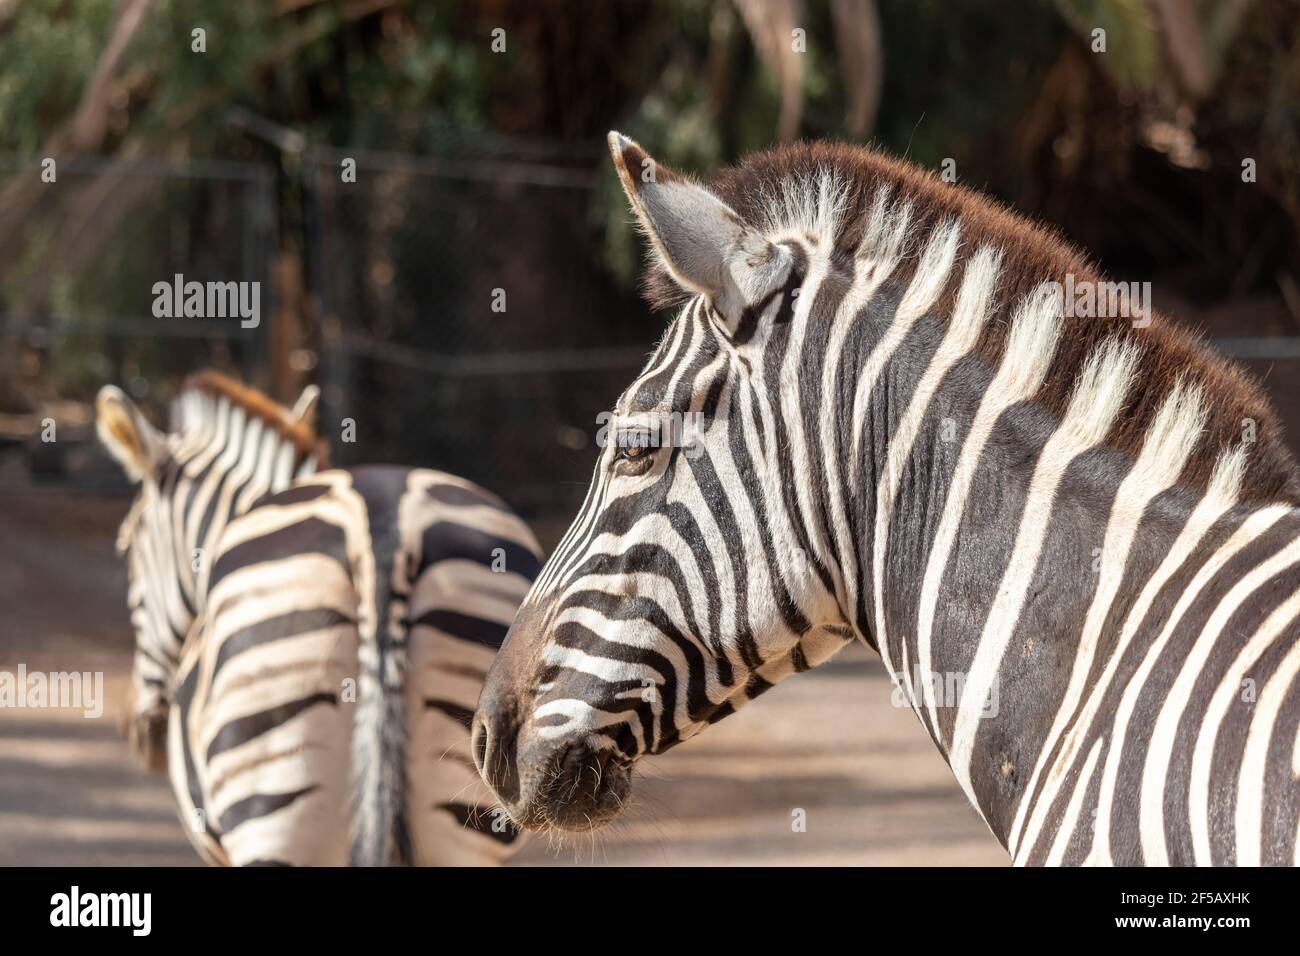 Portait di zebra. Zebra nello zoo. Animale con strisce bianche e nere. Foto della testa di zebra. Foto Stock